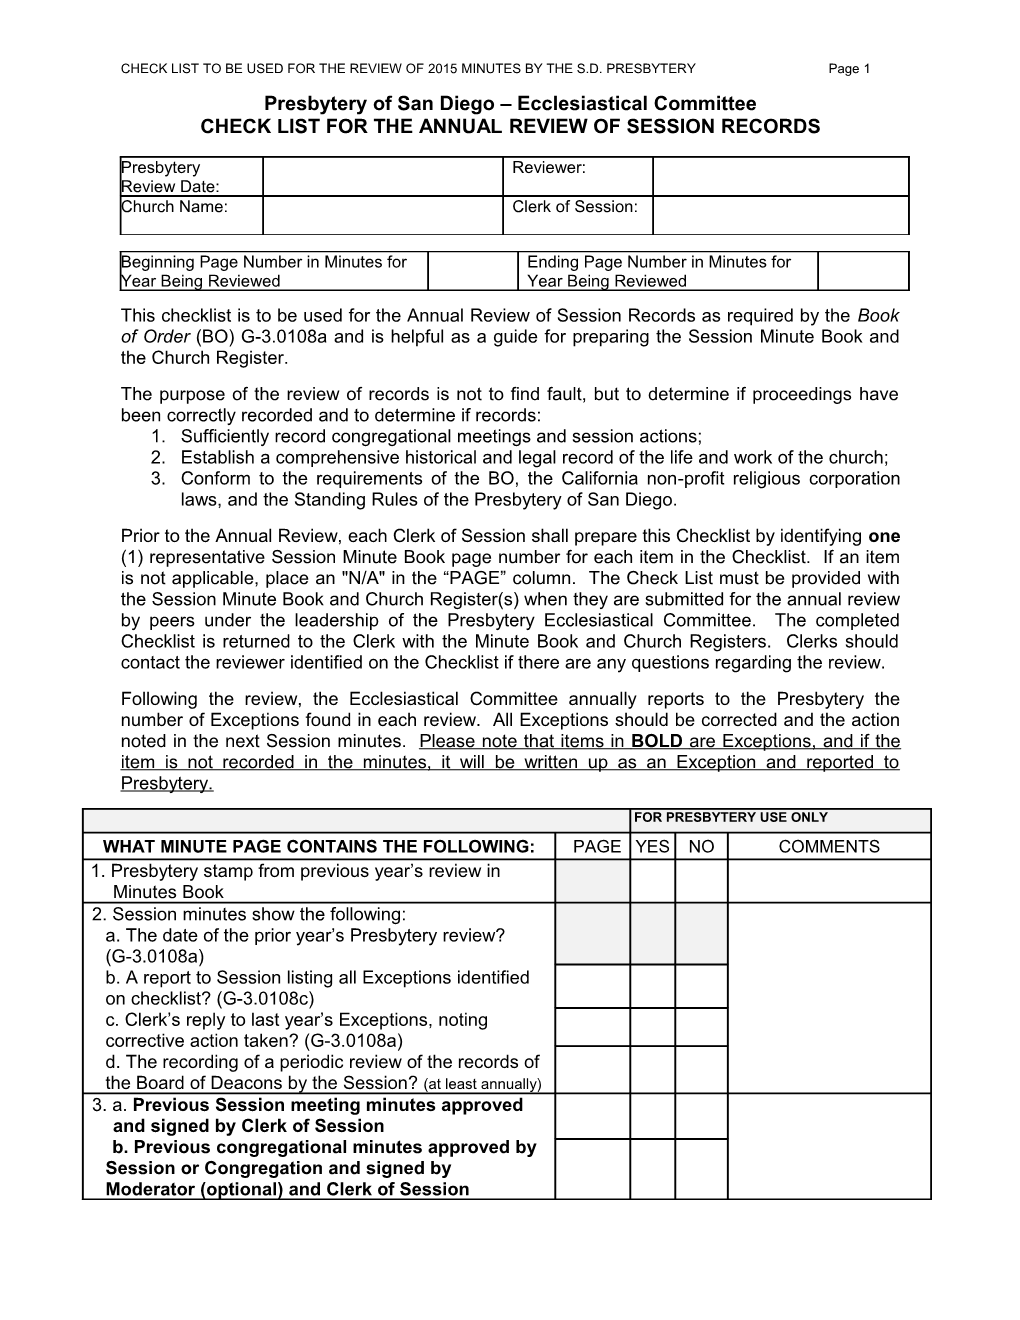 Presbytery Review Form 2008